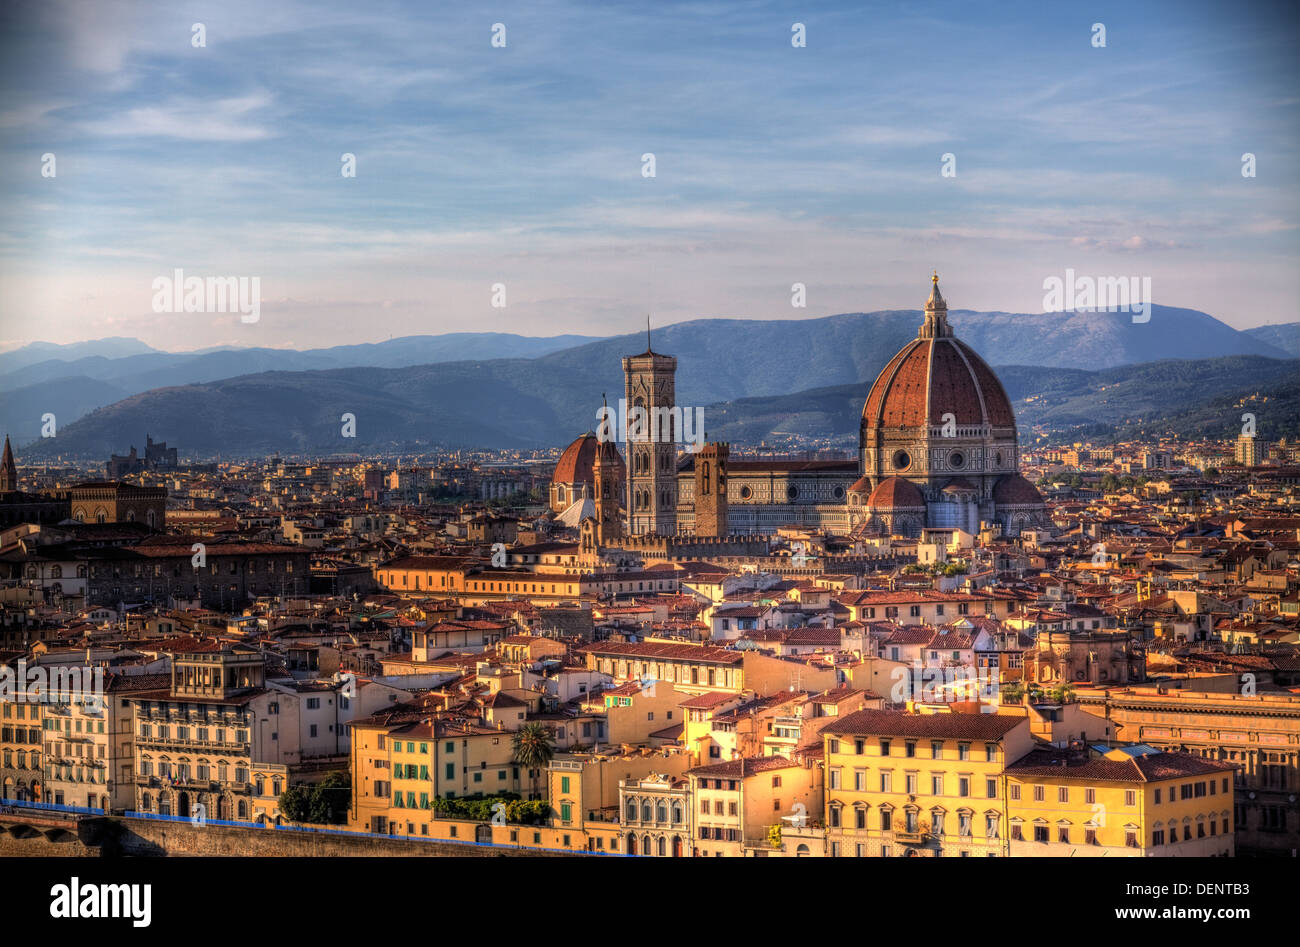 Vista general de la ciudad de Florencia, Italia, con la Basílica di Santa Maria del Fiore. Foto de stock